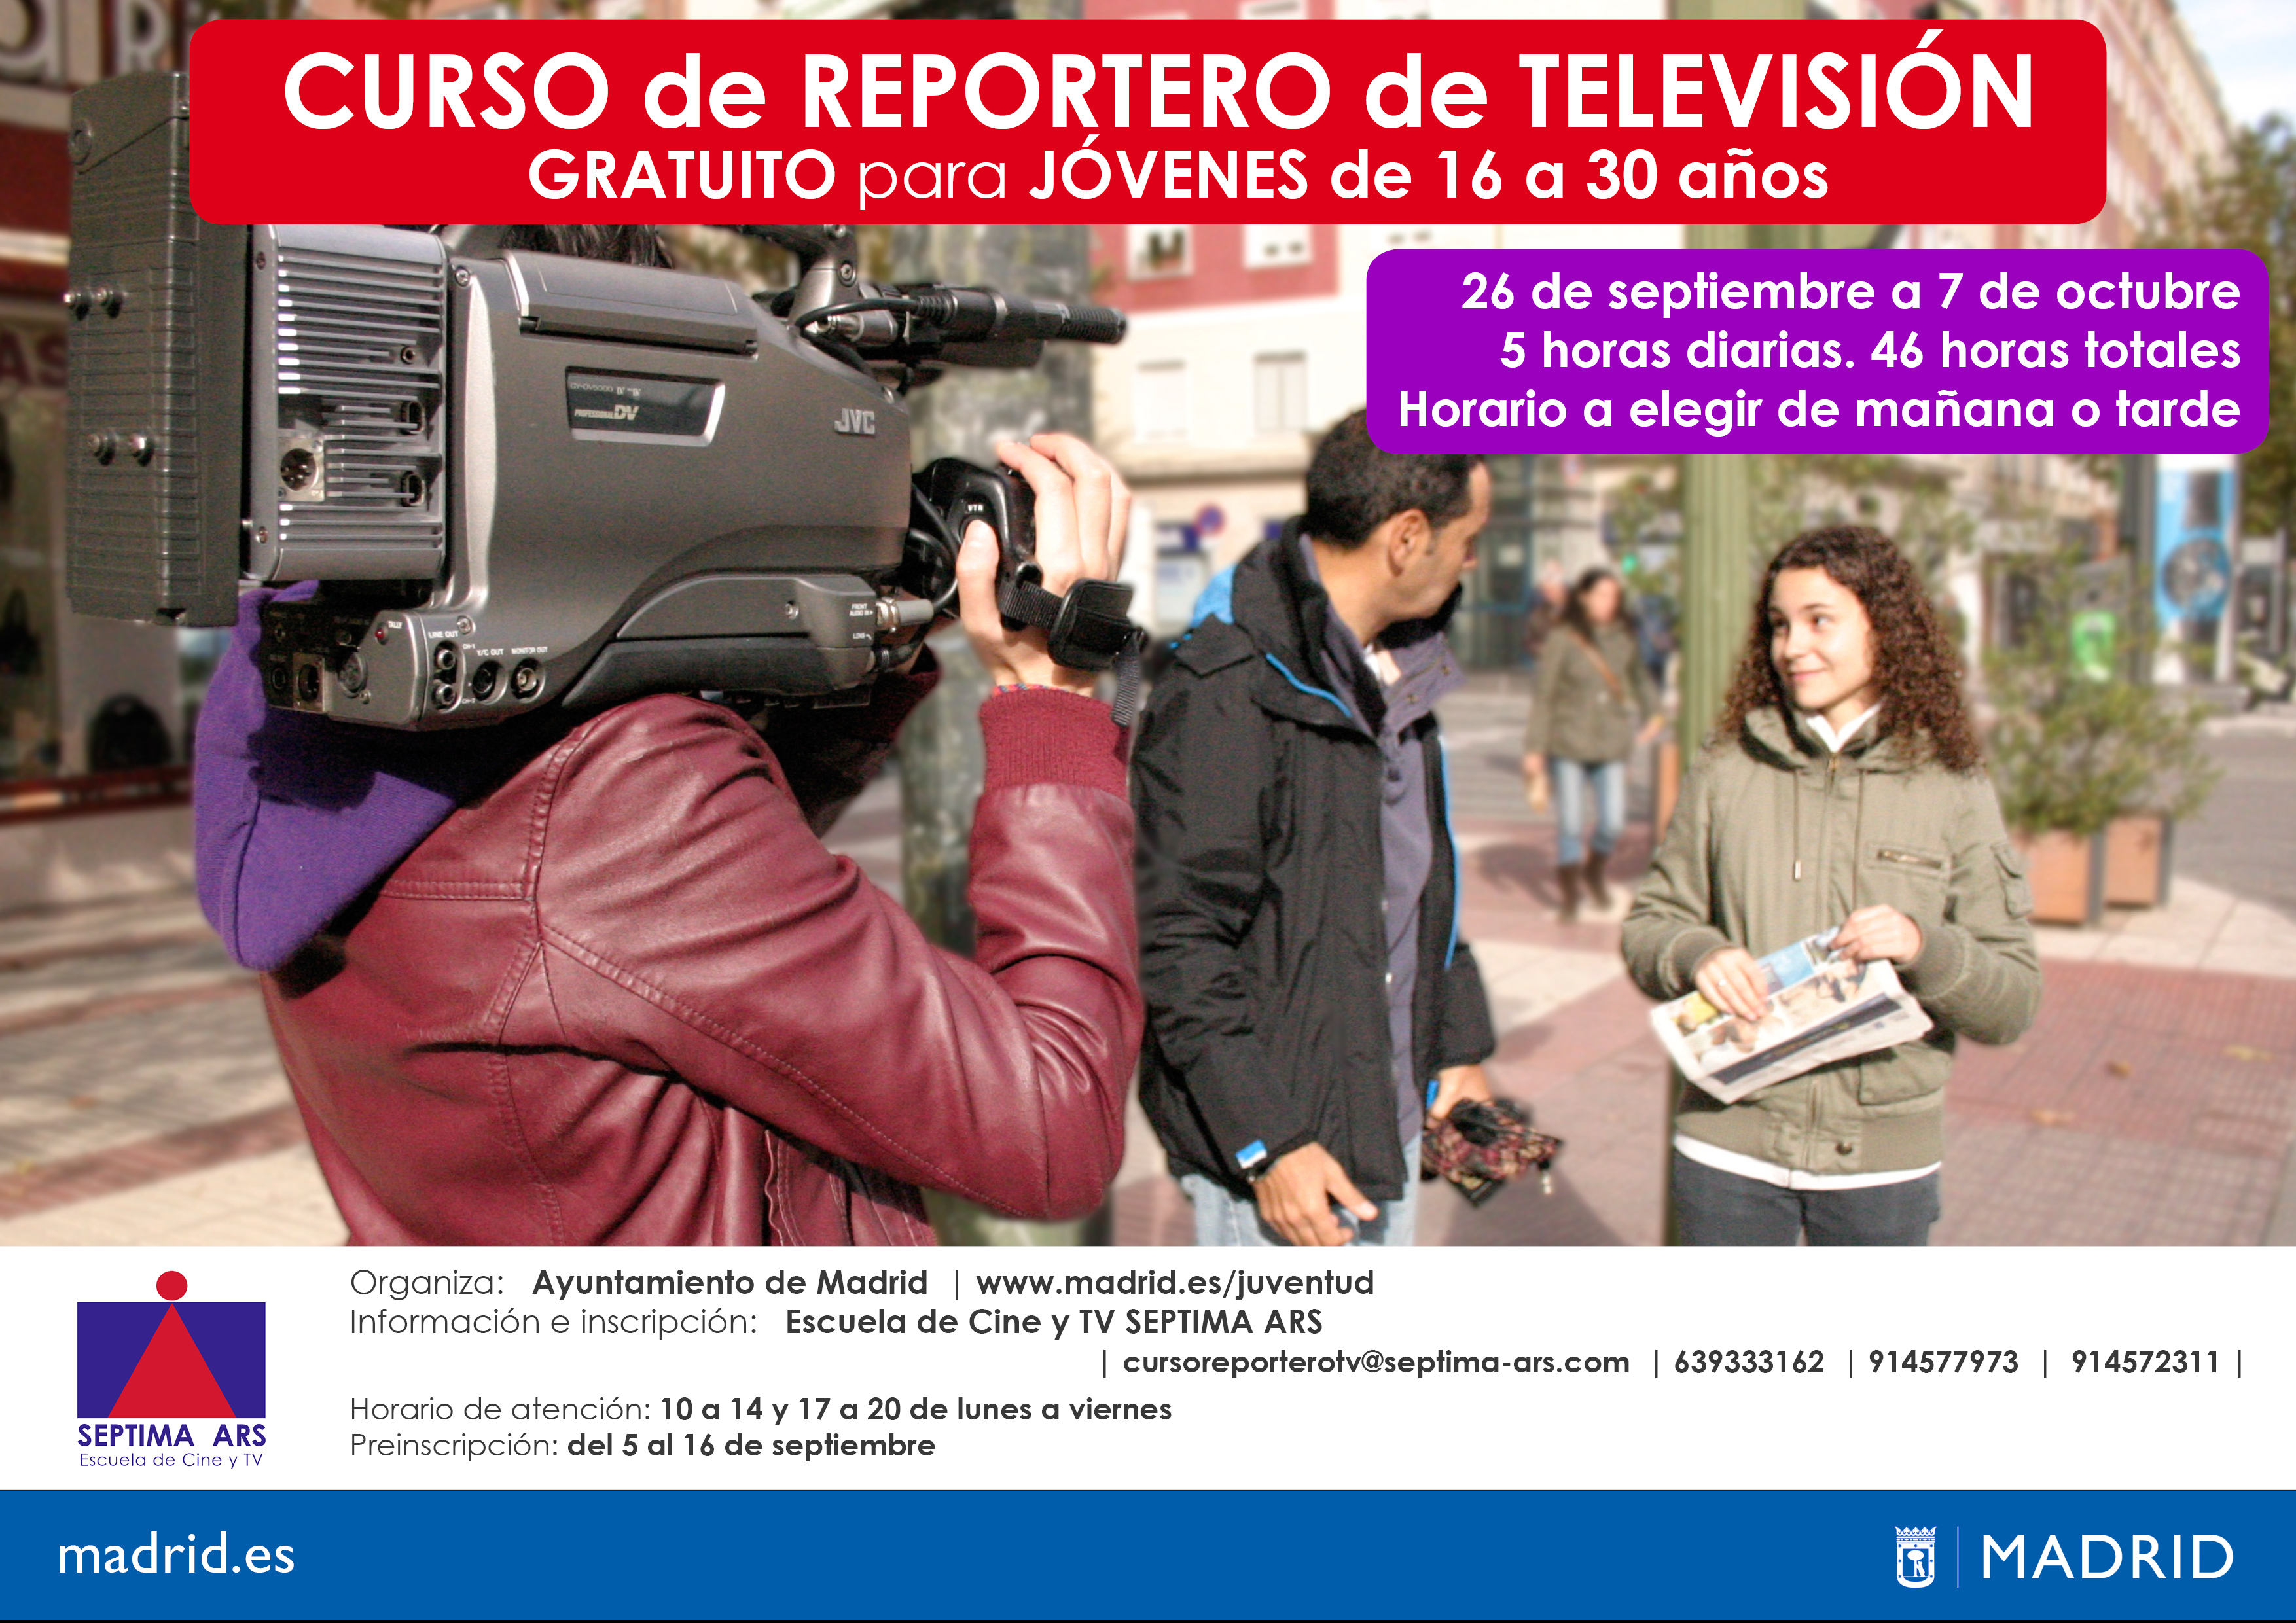 Curso Gratuito de Reportero de Televisión del Ayuntamiento de Madrid realizado por la Escuela de Cine y Televisión Septima Ars